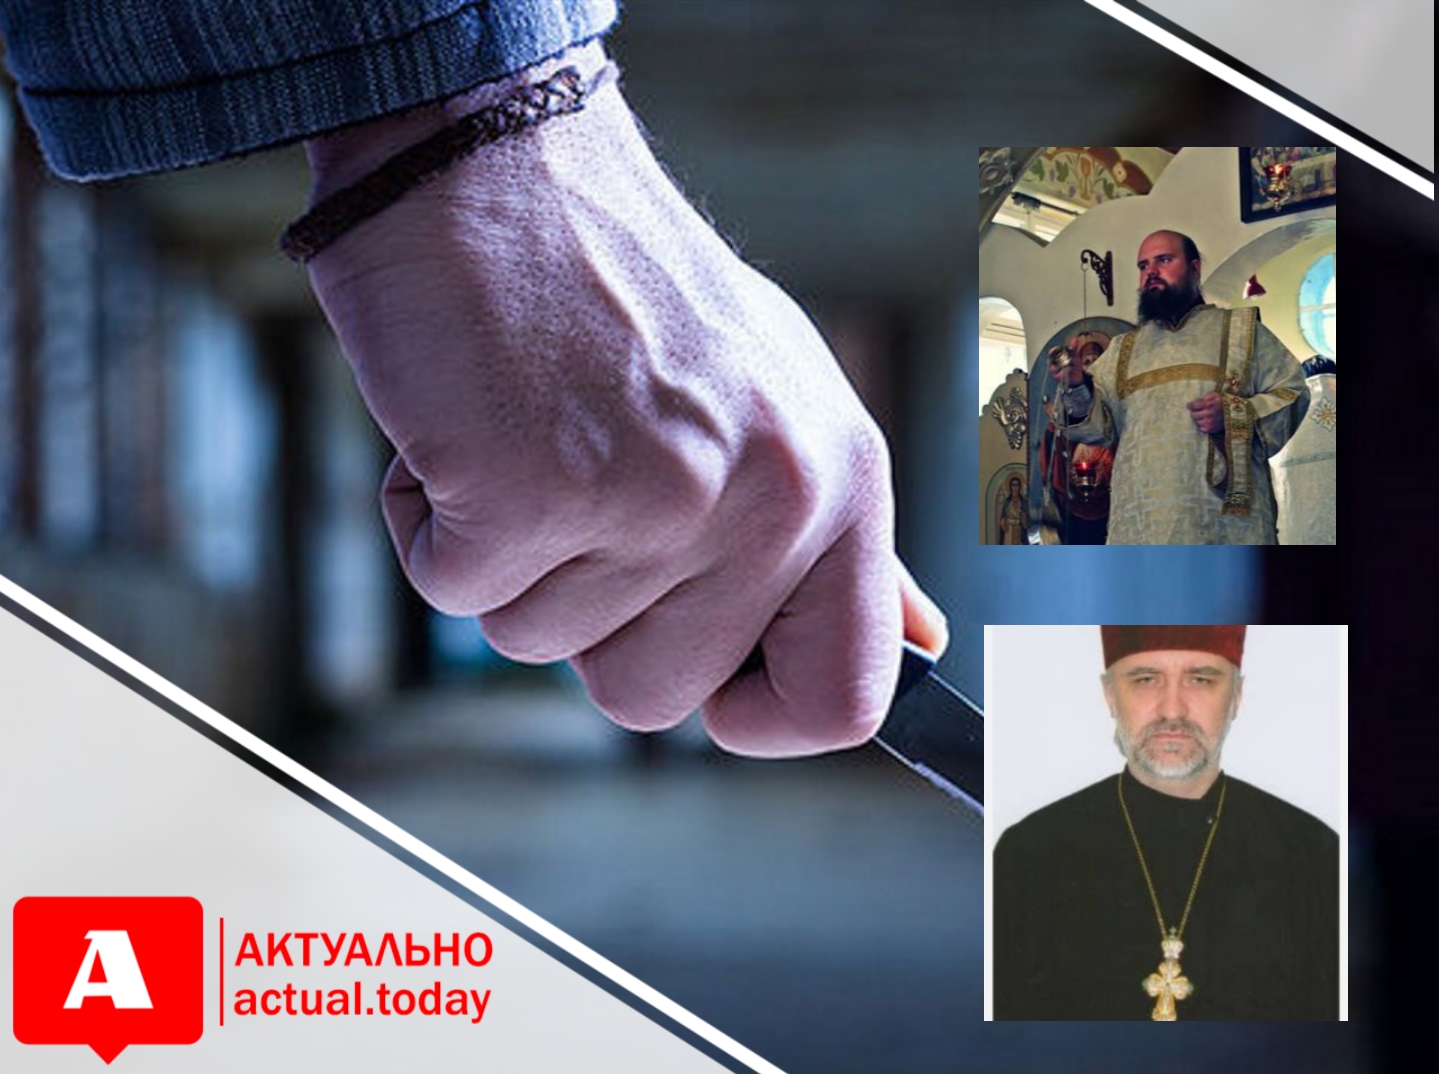 Священнослужители Запорожской епархии УПЦ МП рассказали о подробностях нападения на них (ВИДЕО)